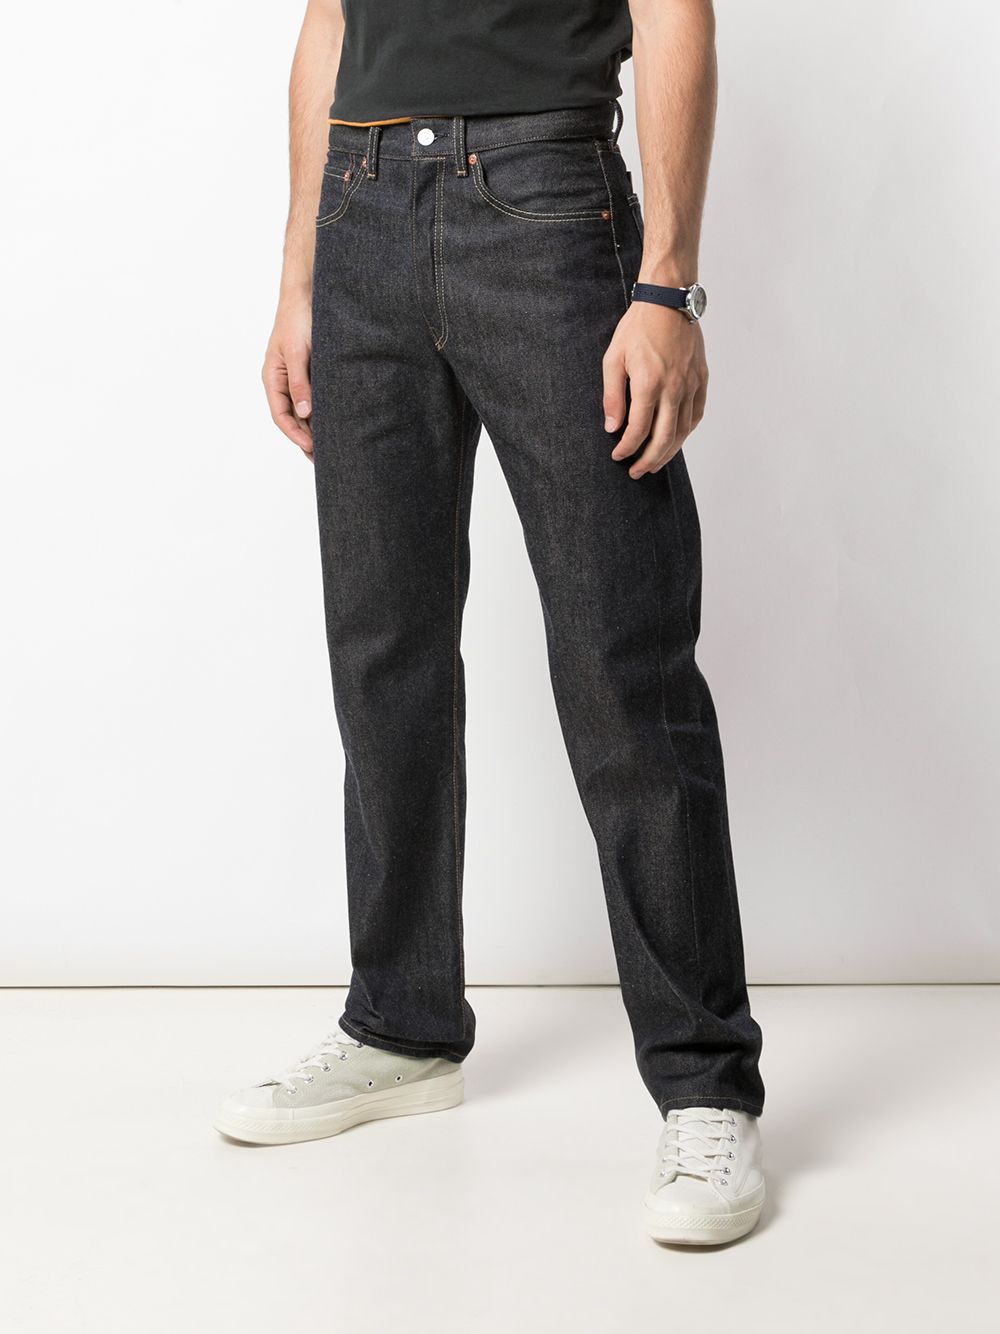 фото Levi's Vintage Clothing джинсы 501 1955-го года